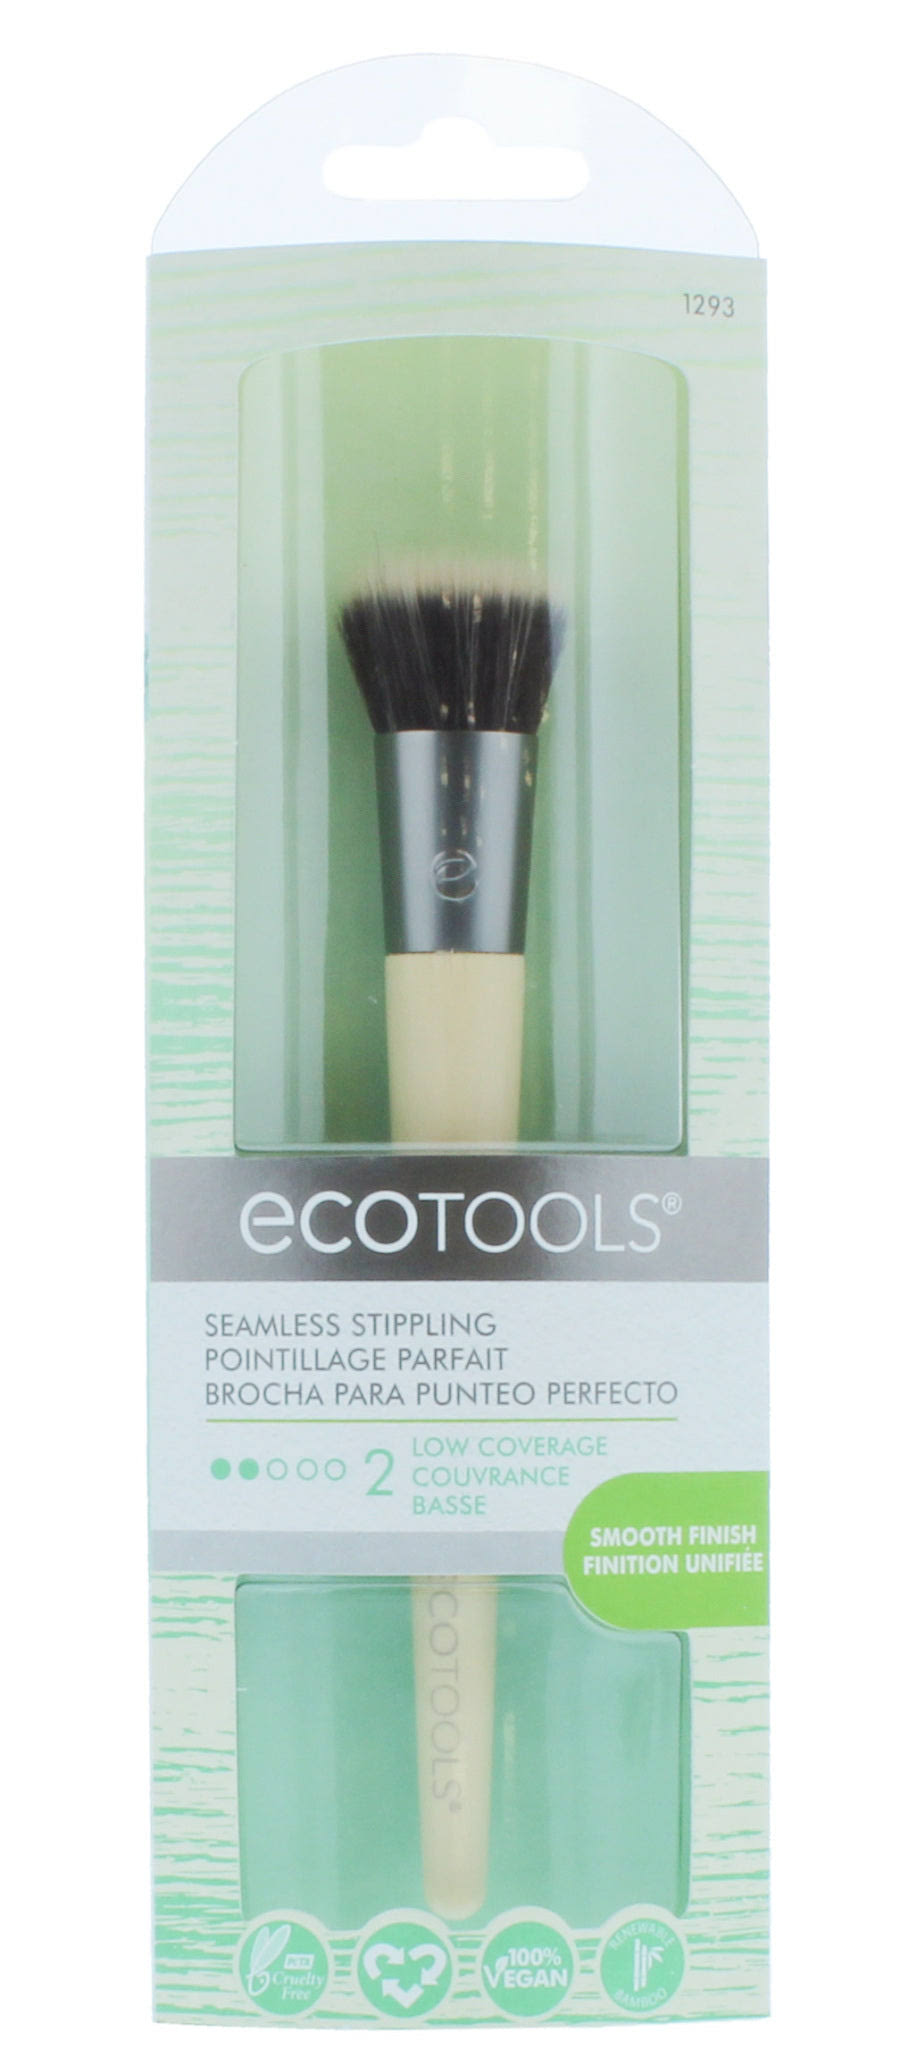 Ecotools Seamless Stippling Makeup Brush